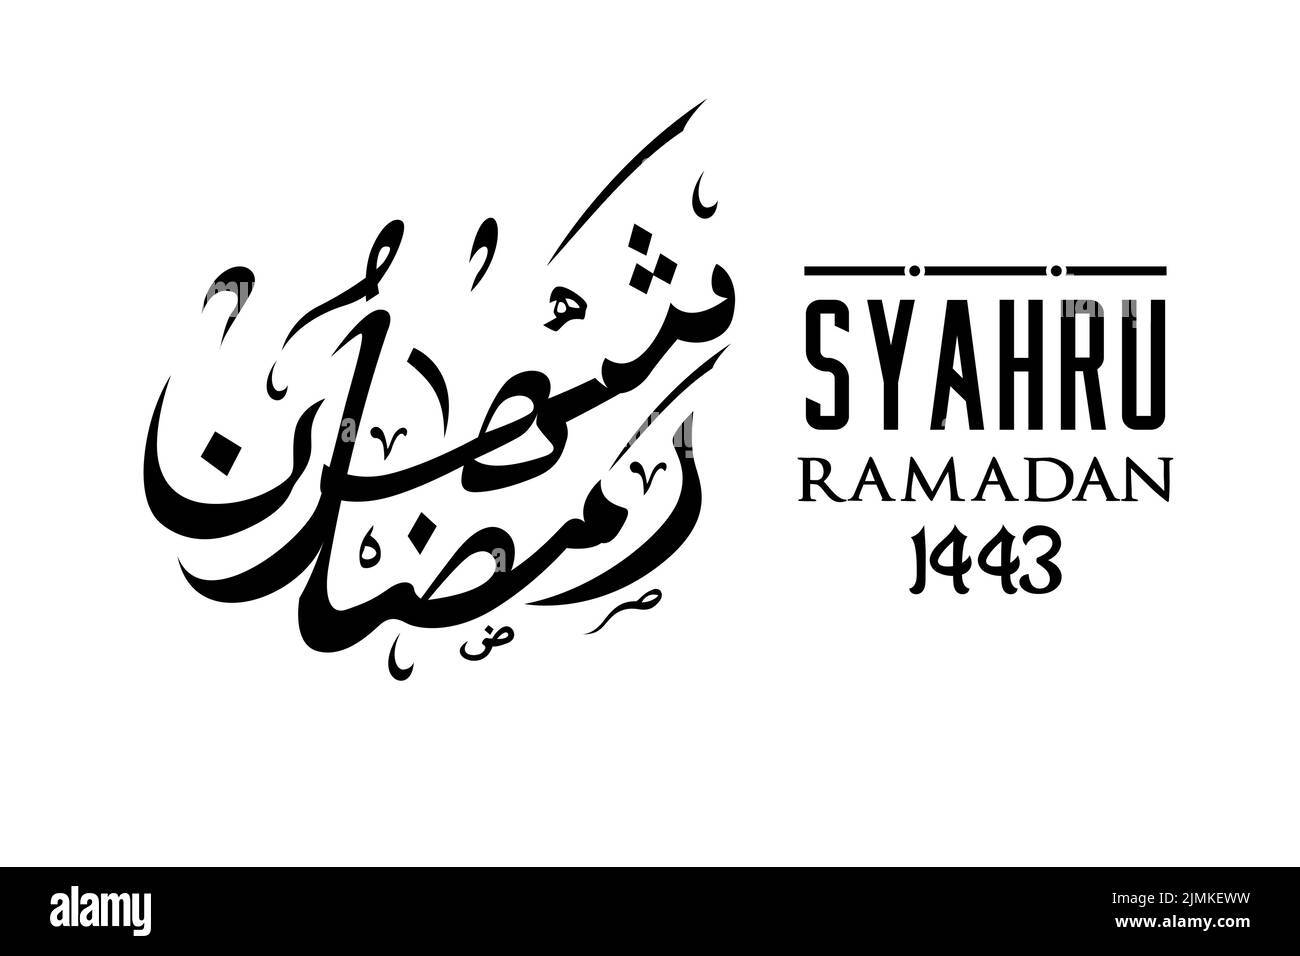 Syahru Ramadan Writing Arabic Calligraphy Design Inspiration Stock Vector